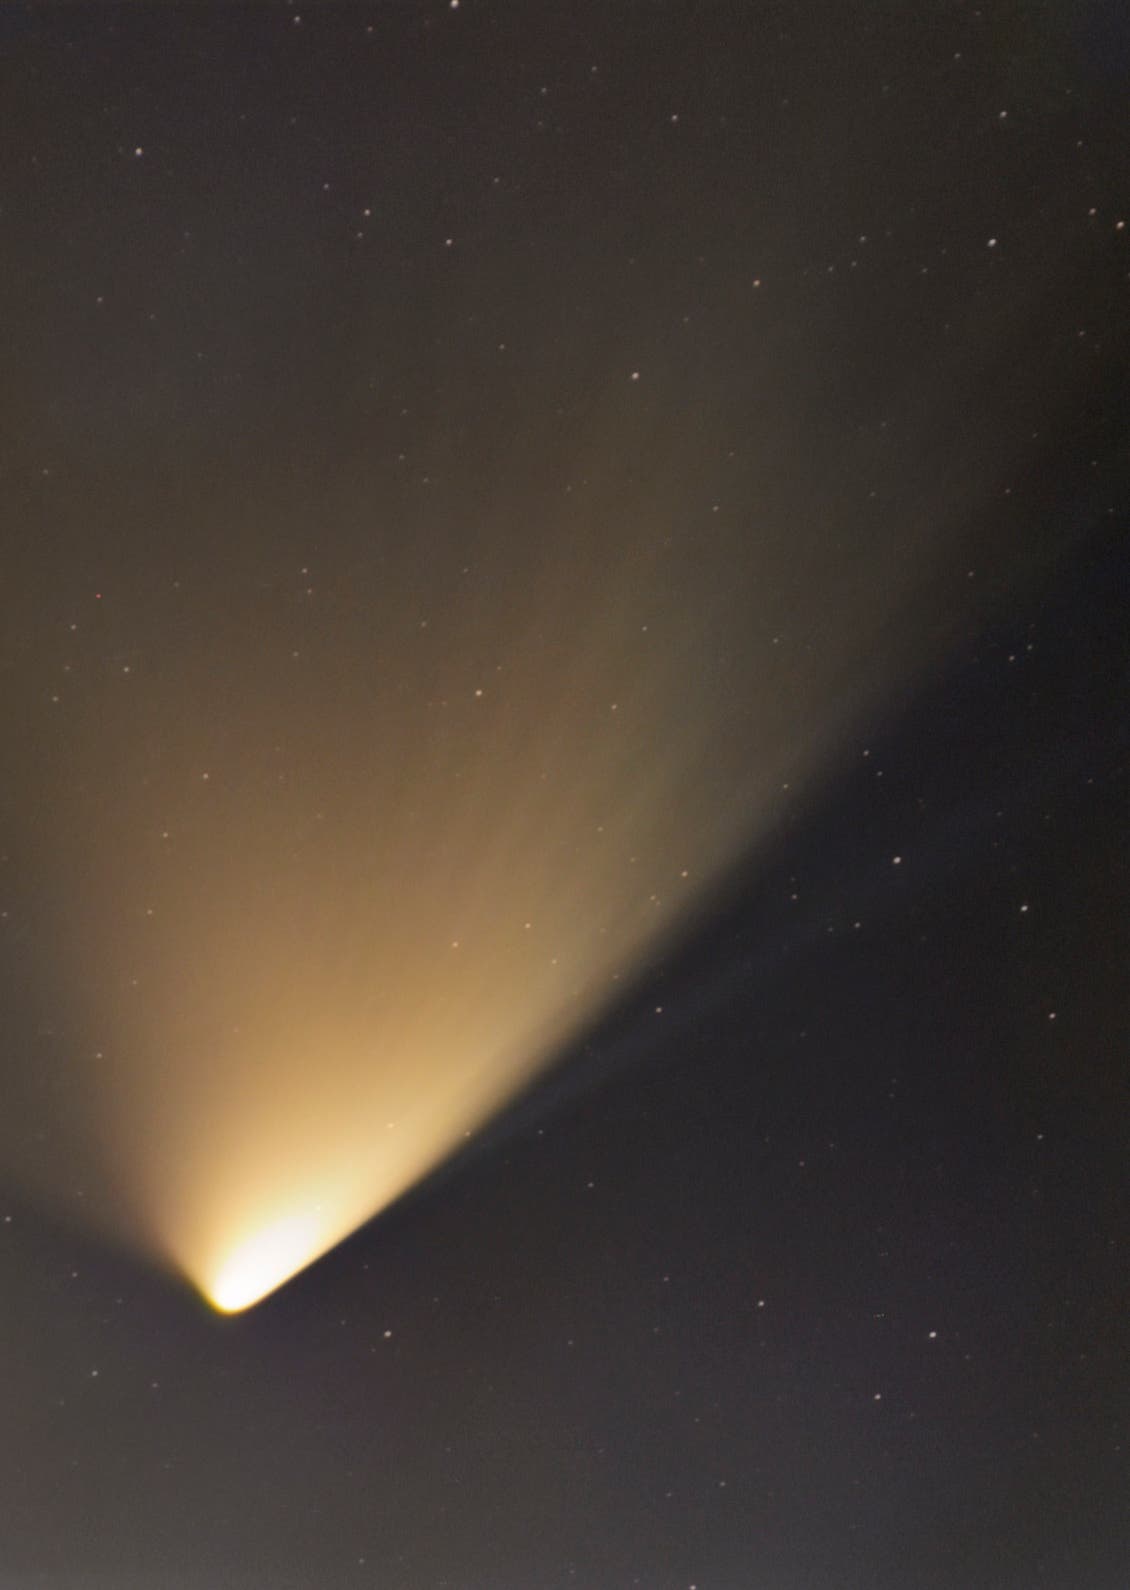 Komet C/2011 L4 PANSTARRS mit Schweifstrukturen